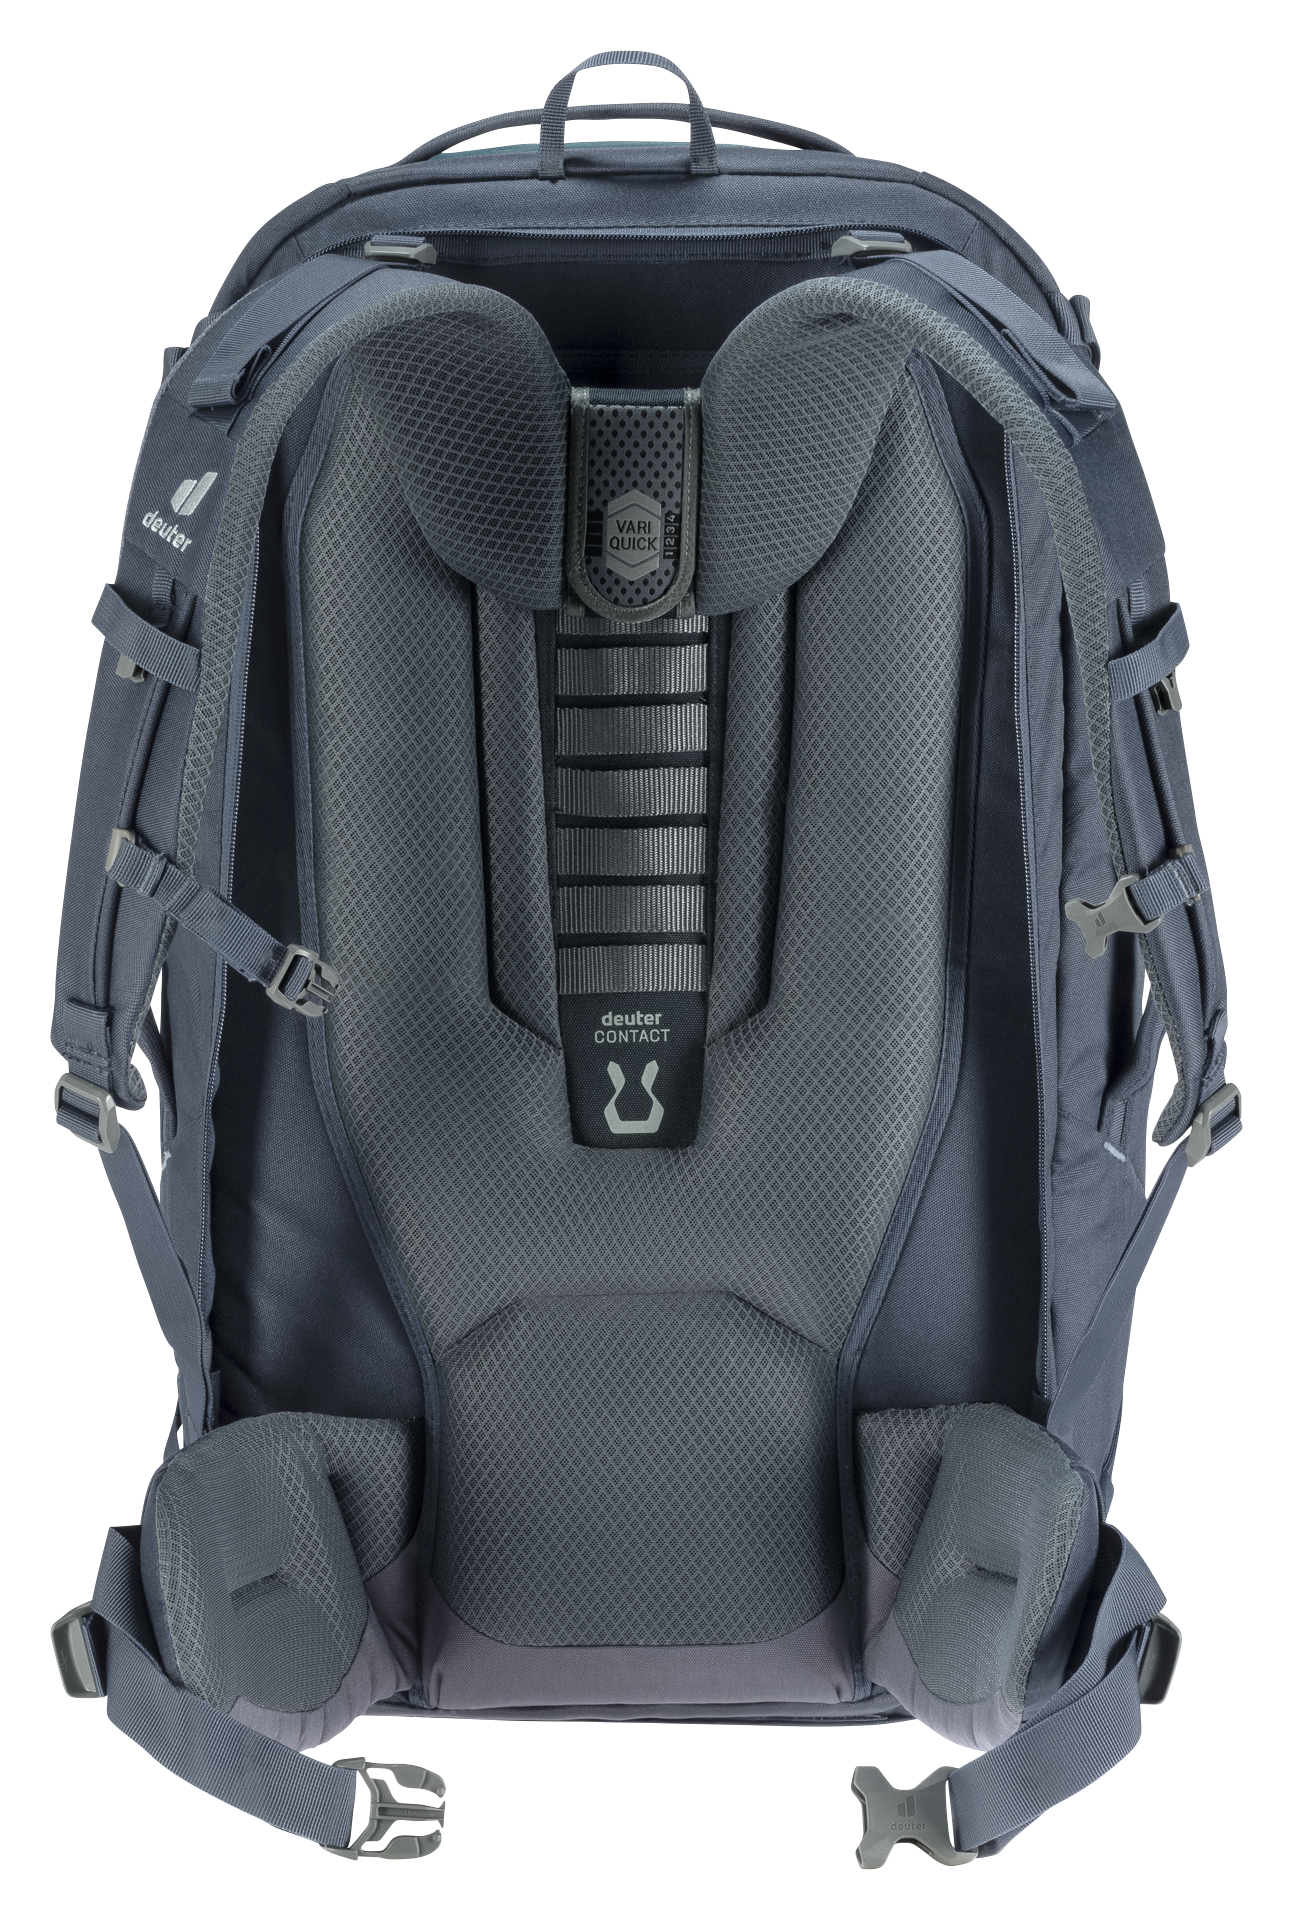 Gelach Alvast uitzetten deuter AViANT Access Pro 60 | Travel backpack